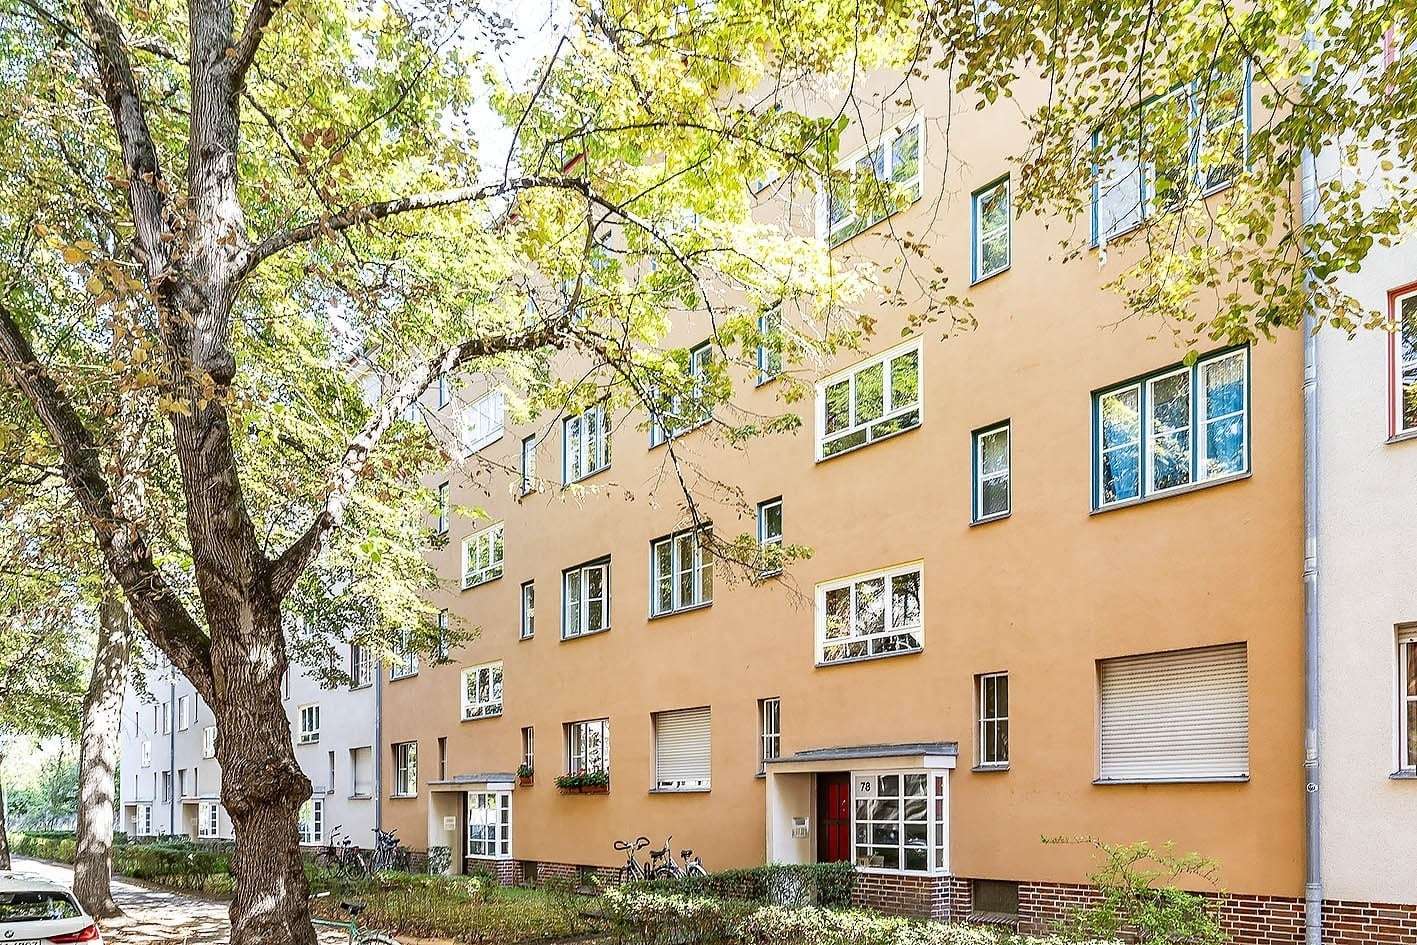 Außenansicht - Etagenwohnung in 13189 Berlin mit 47m² kaufen